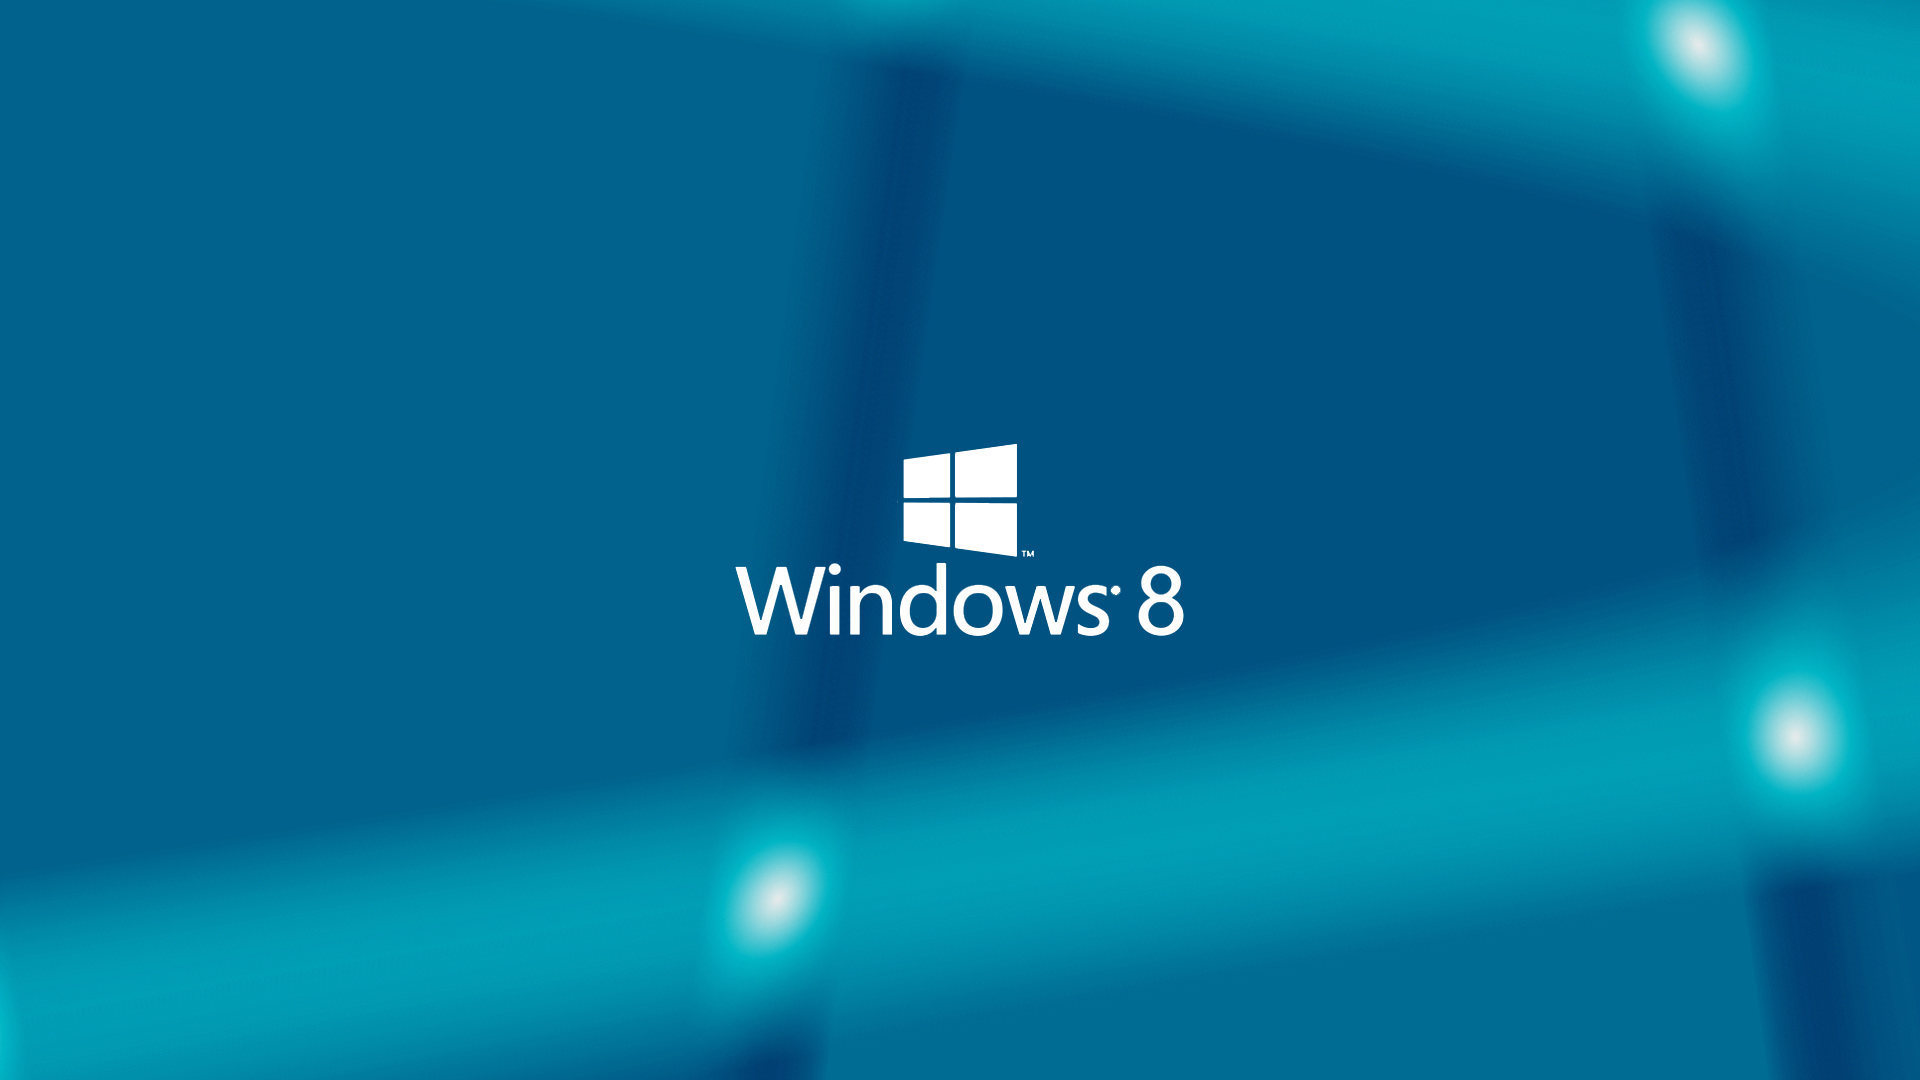 HD Wallpapers for Windows 8 | PixelsTalk.Net